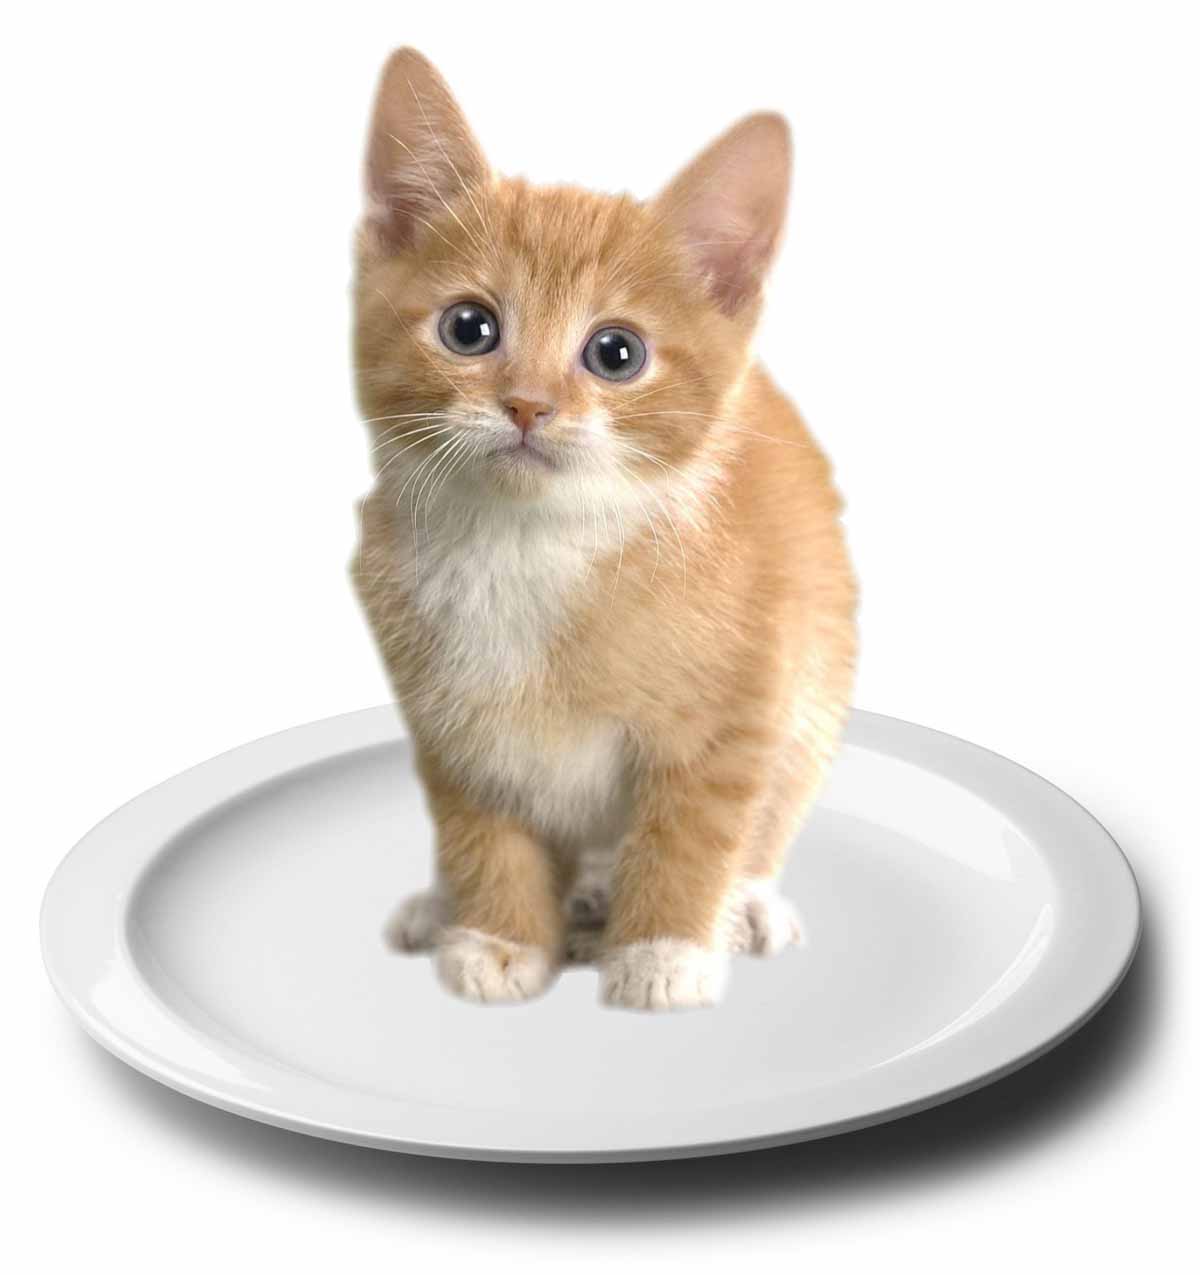 1 cat 1 dish